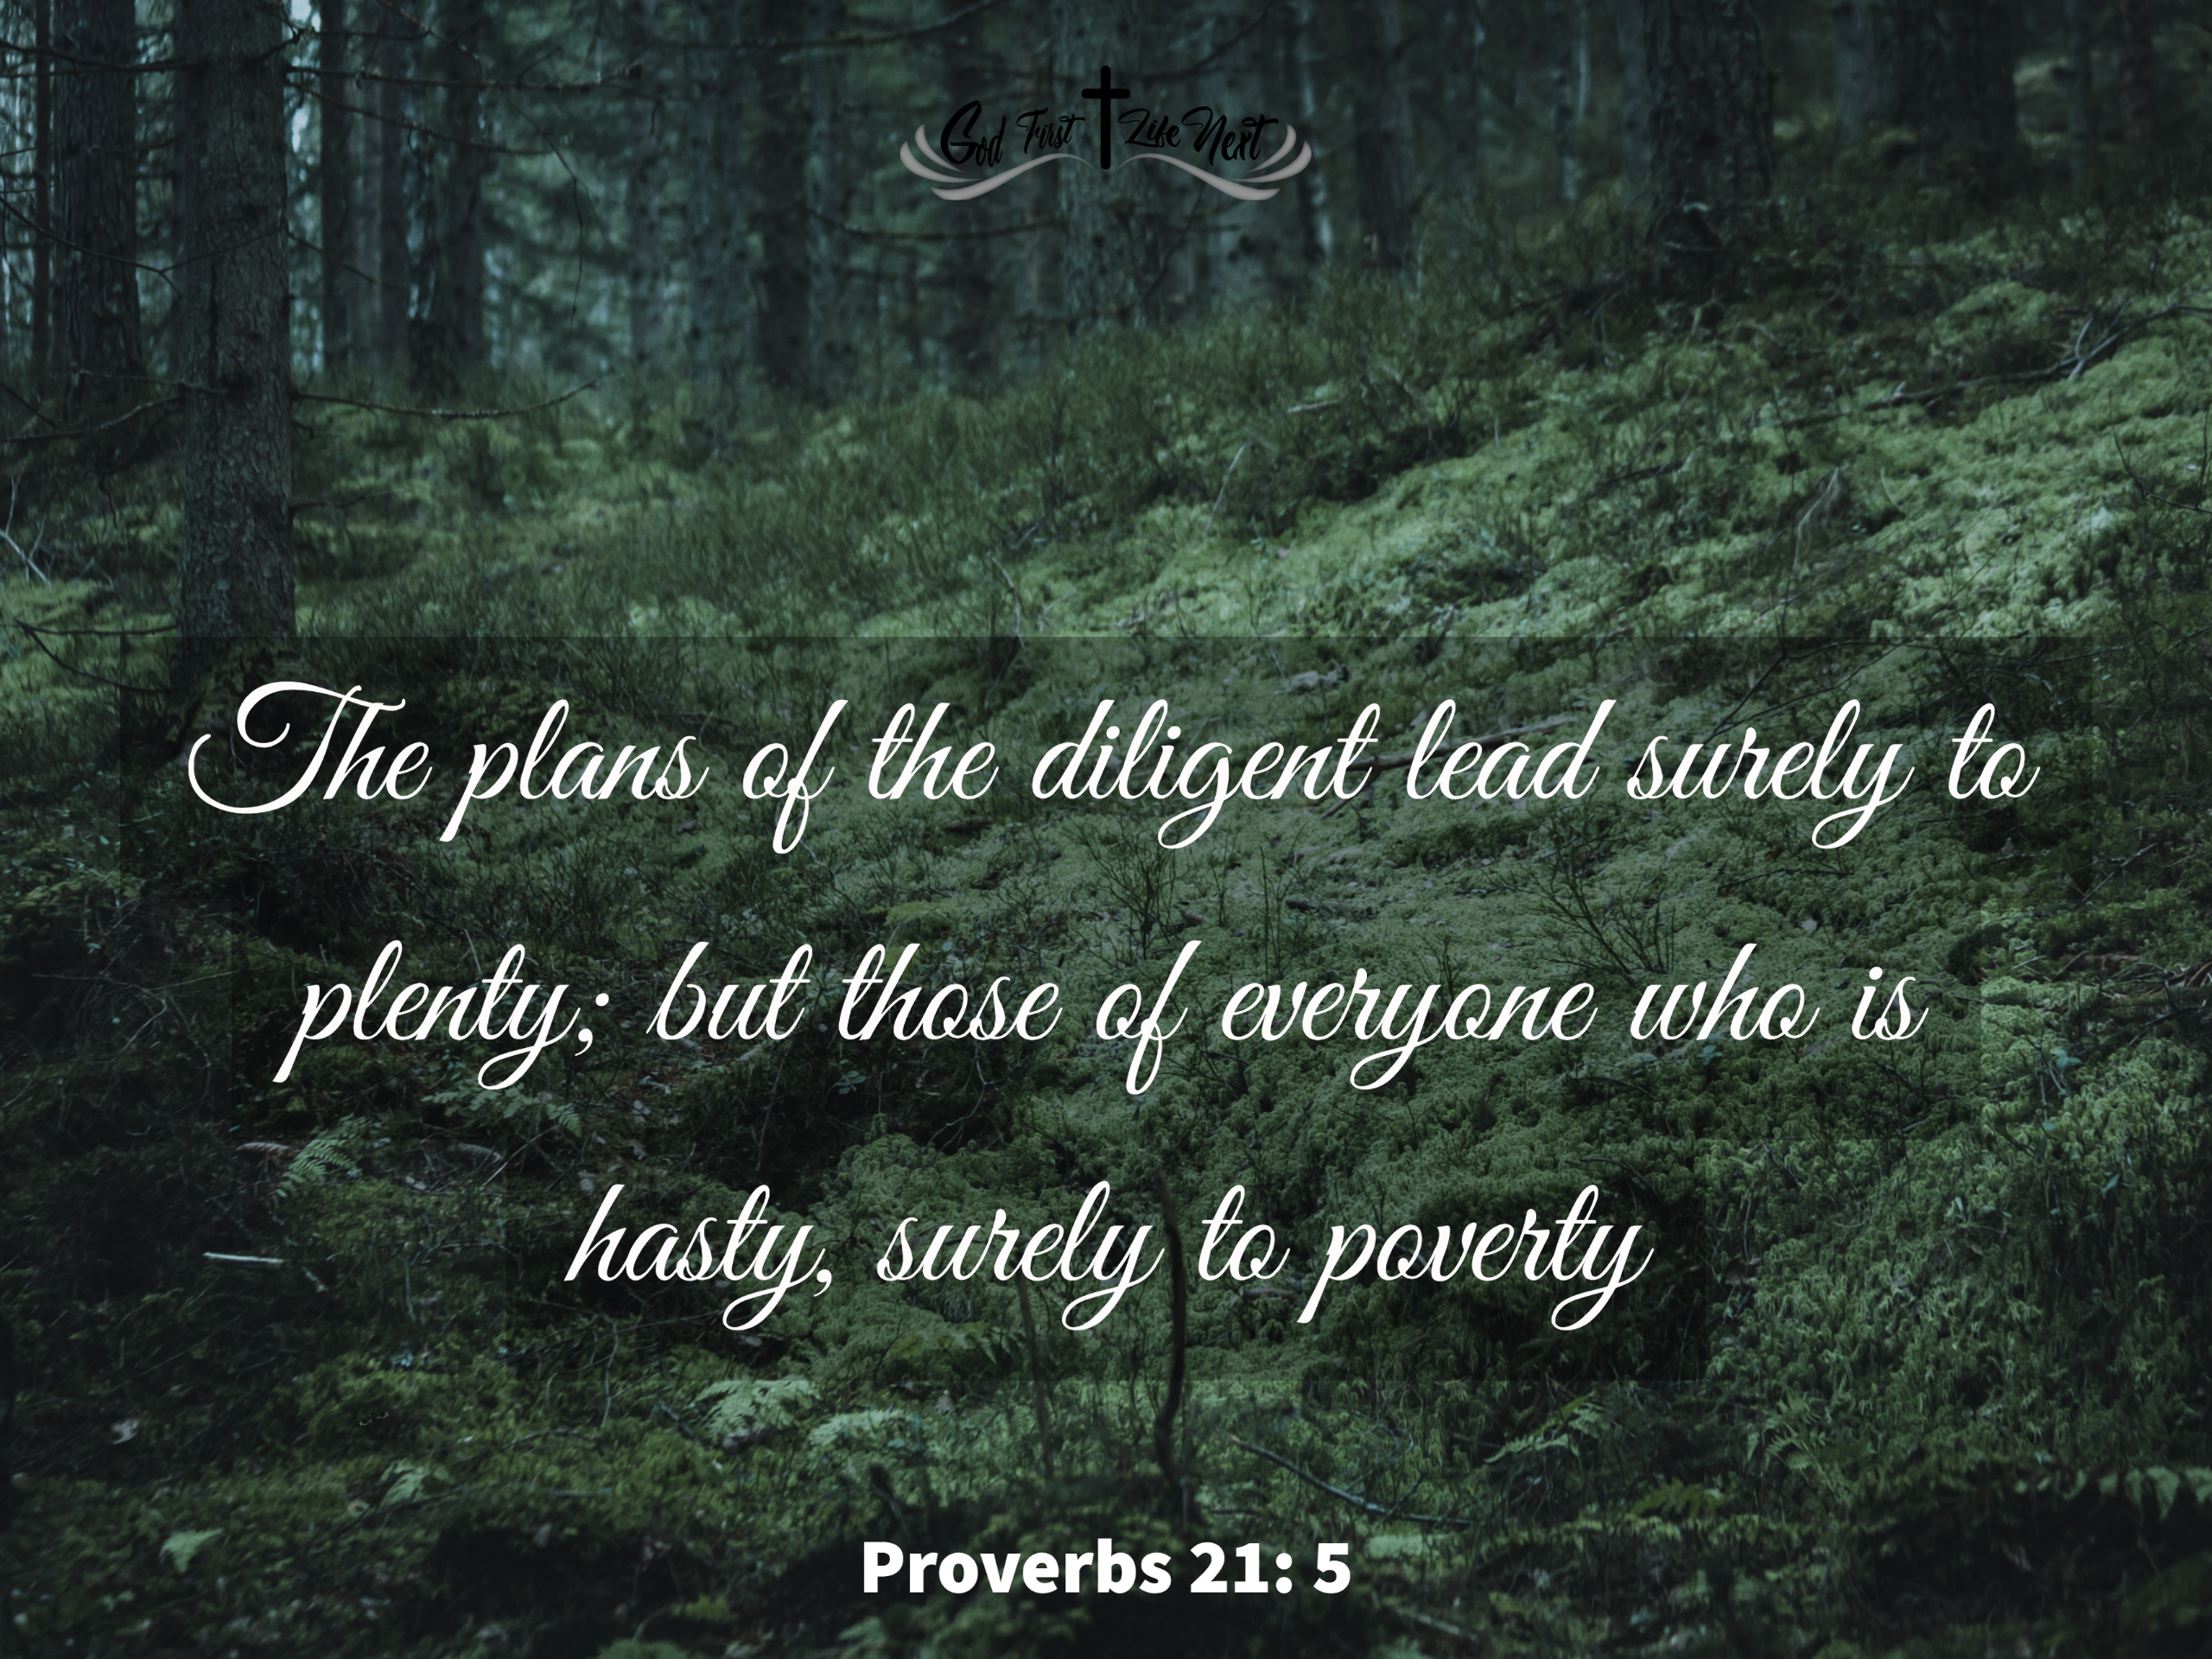 Proverbs 21: 5